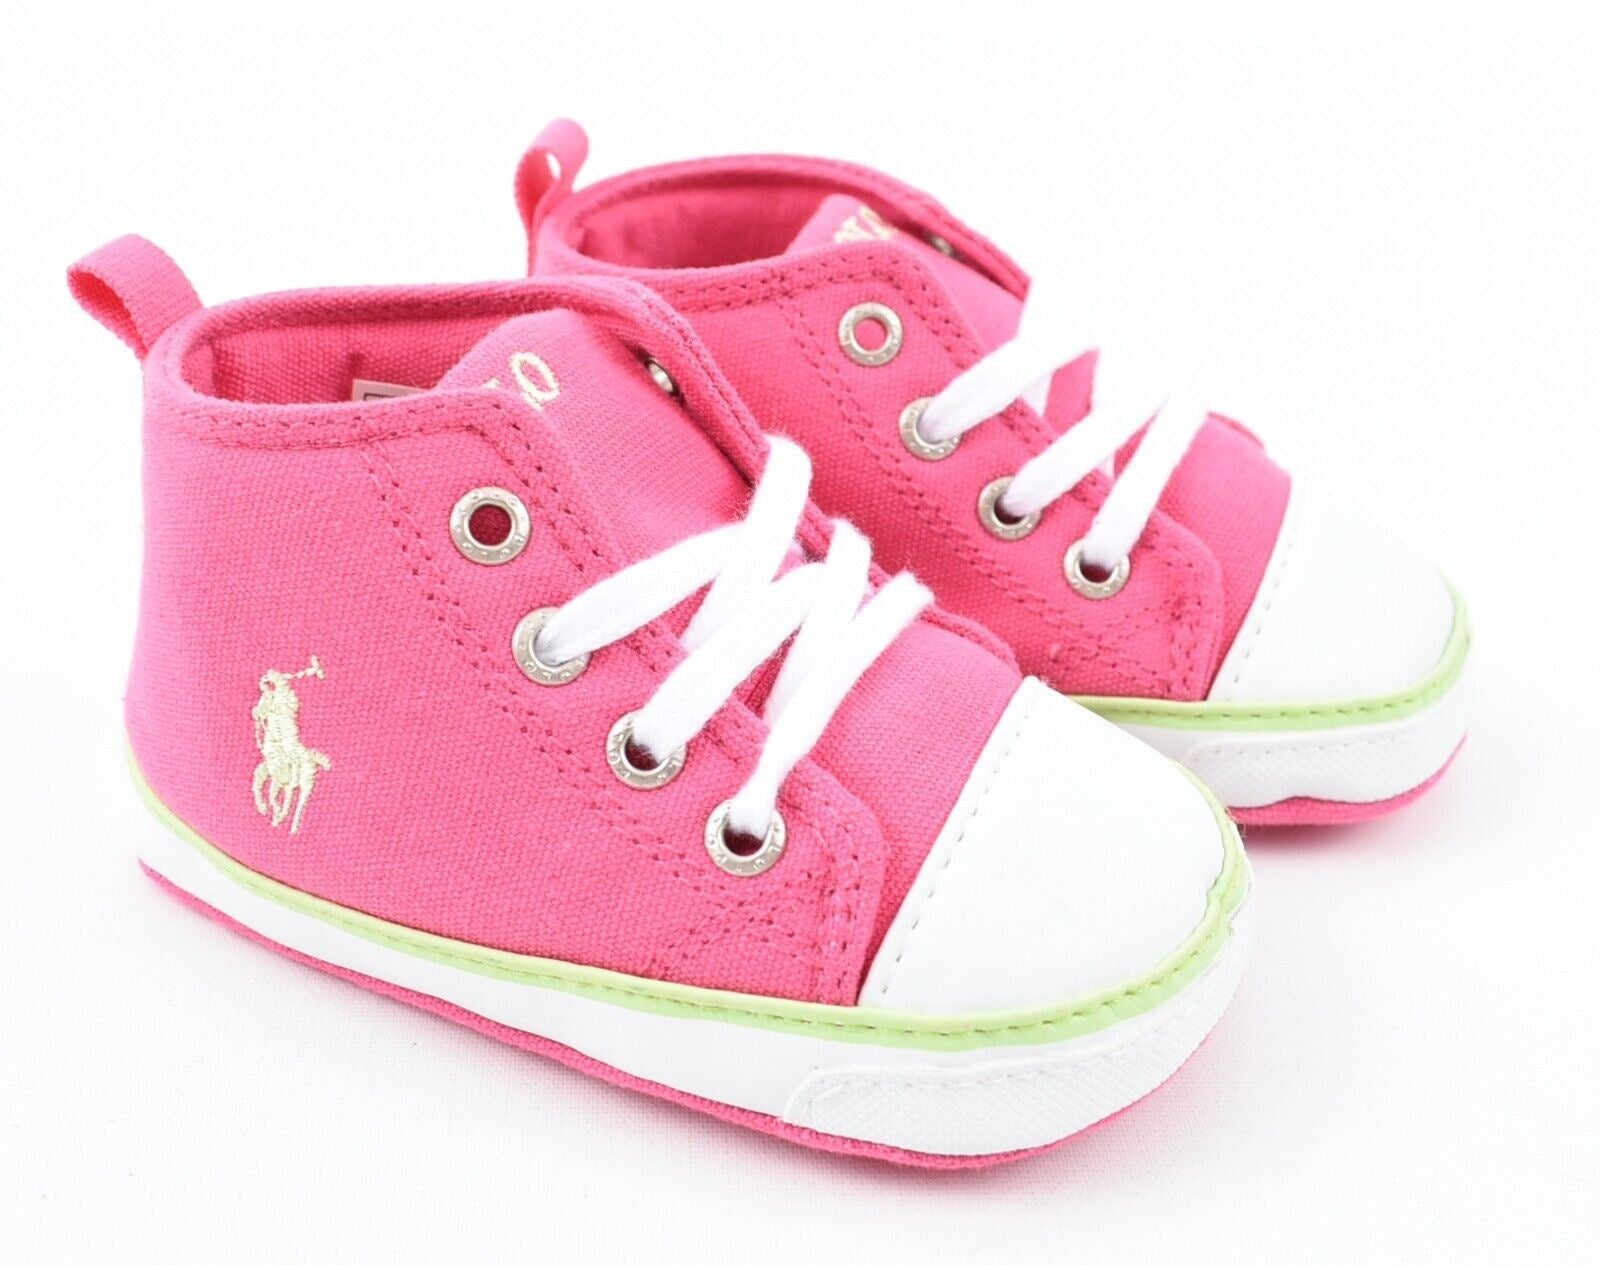 POLO RALPH LAUREN Baby Girls Pram Shoes, Pink, size 9-12 months/ EU 19